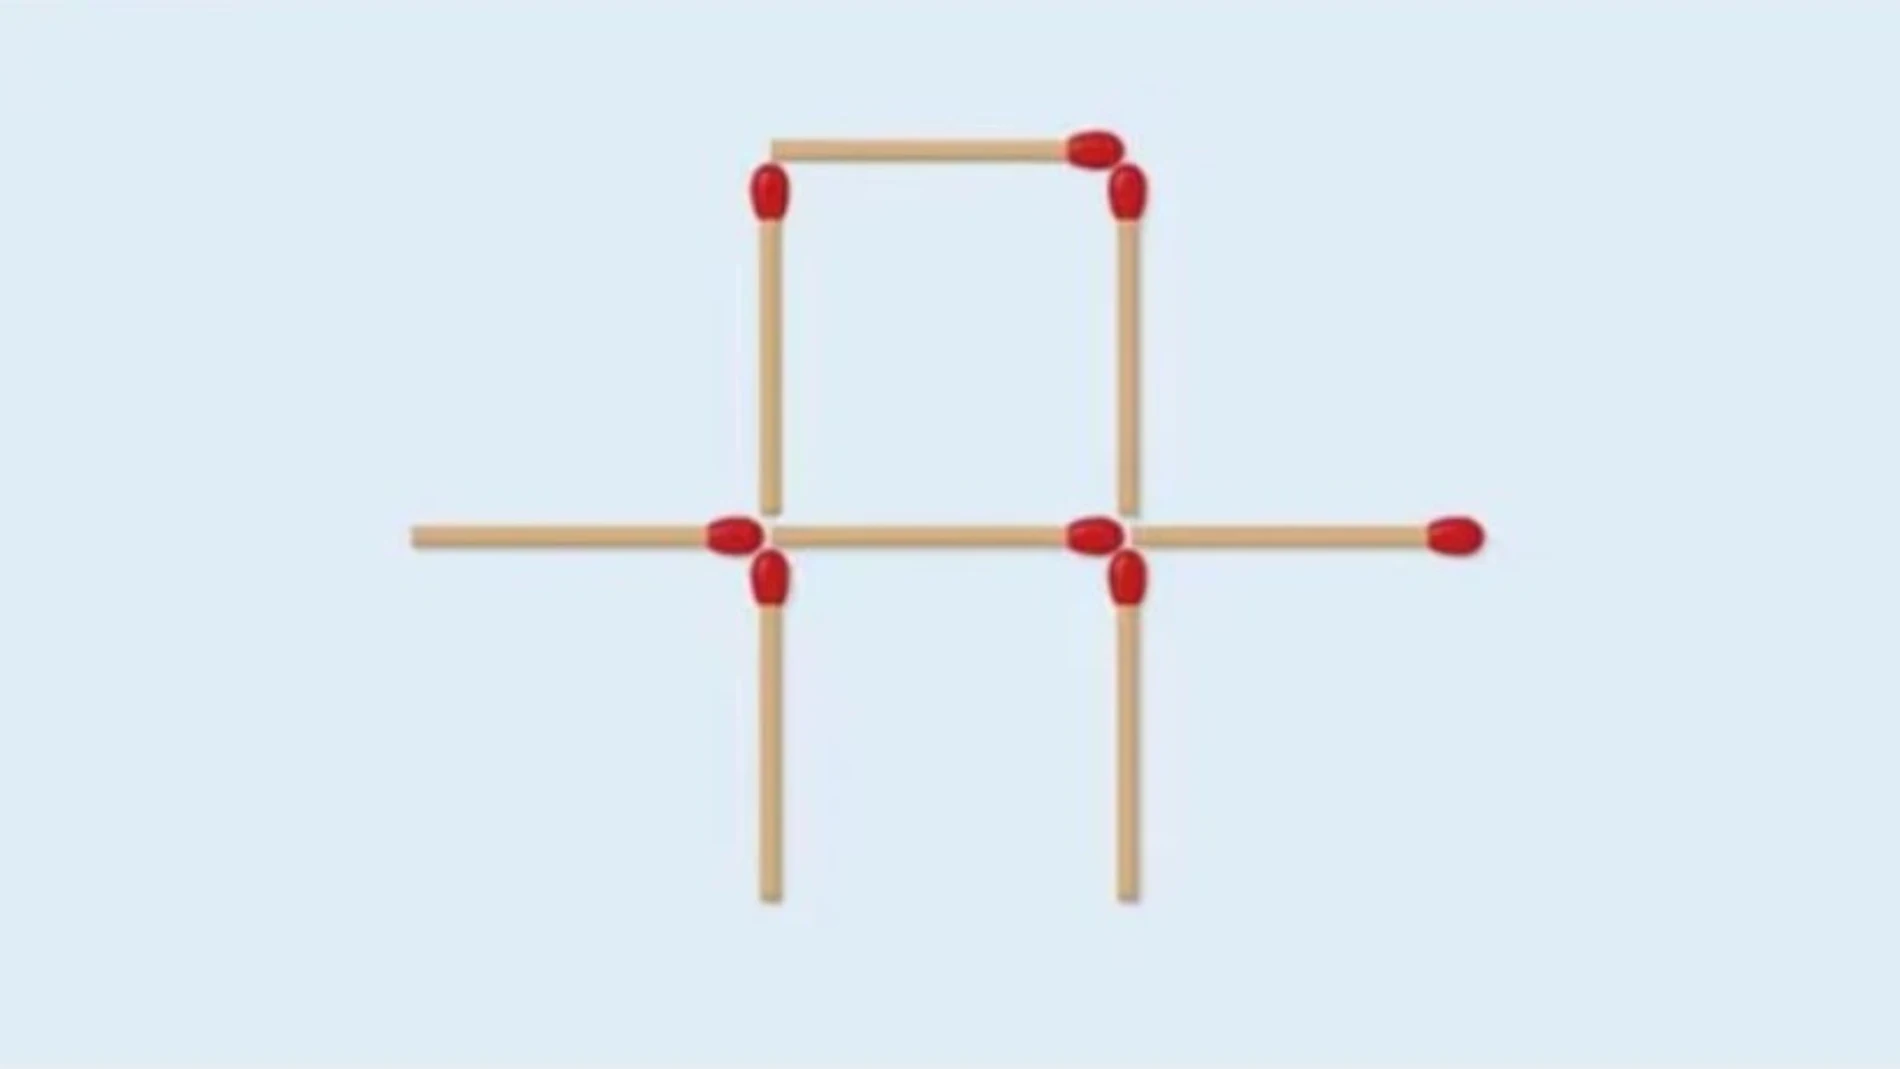 ¿Puedes formar dos cuadrados moviendo dos cerillas?